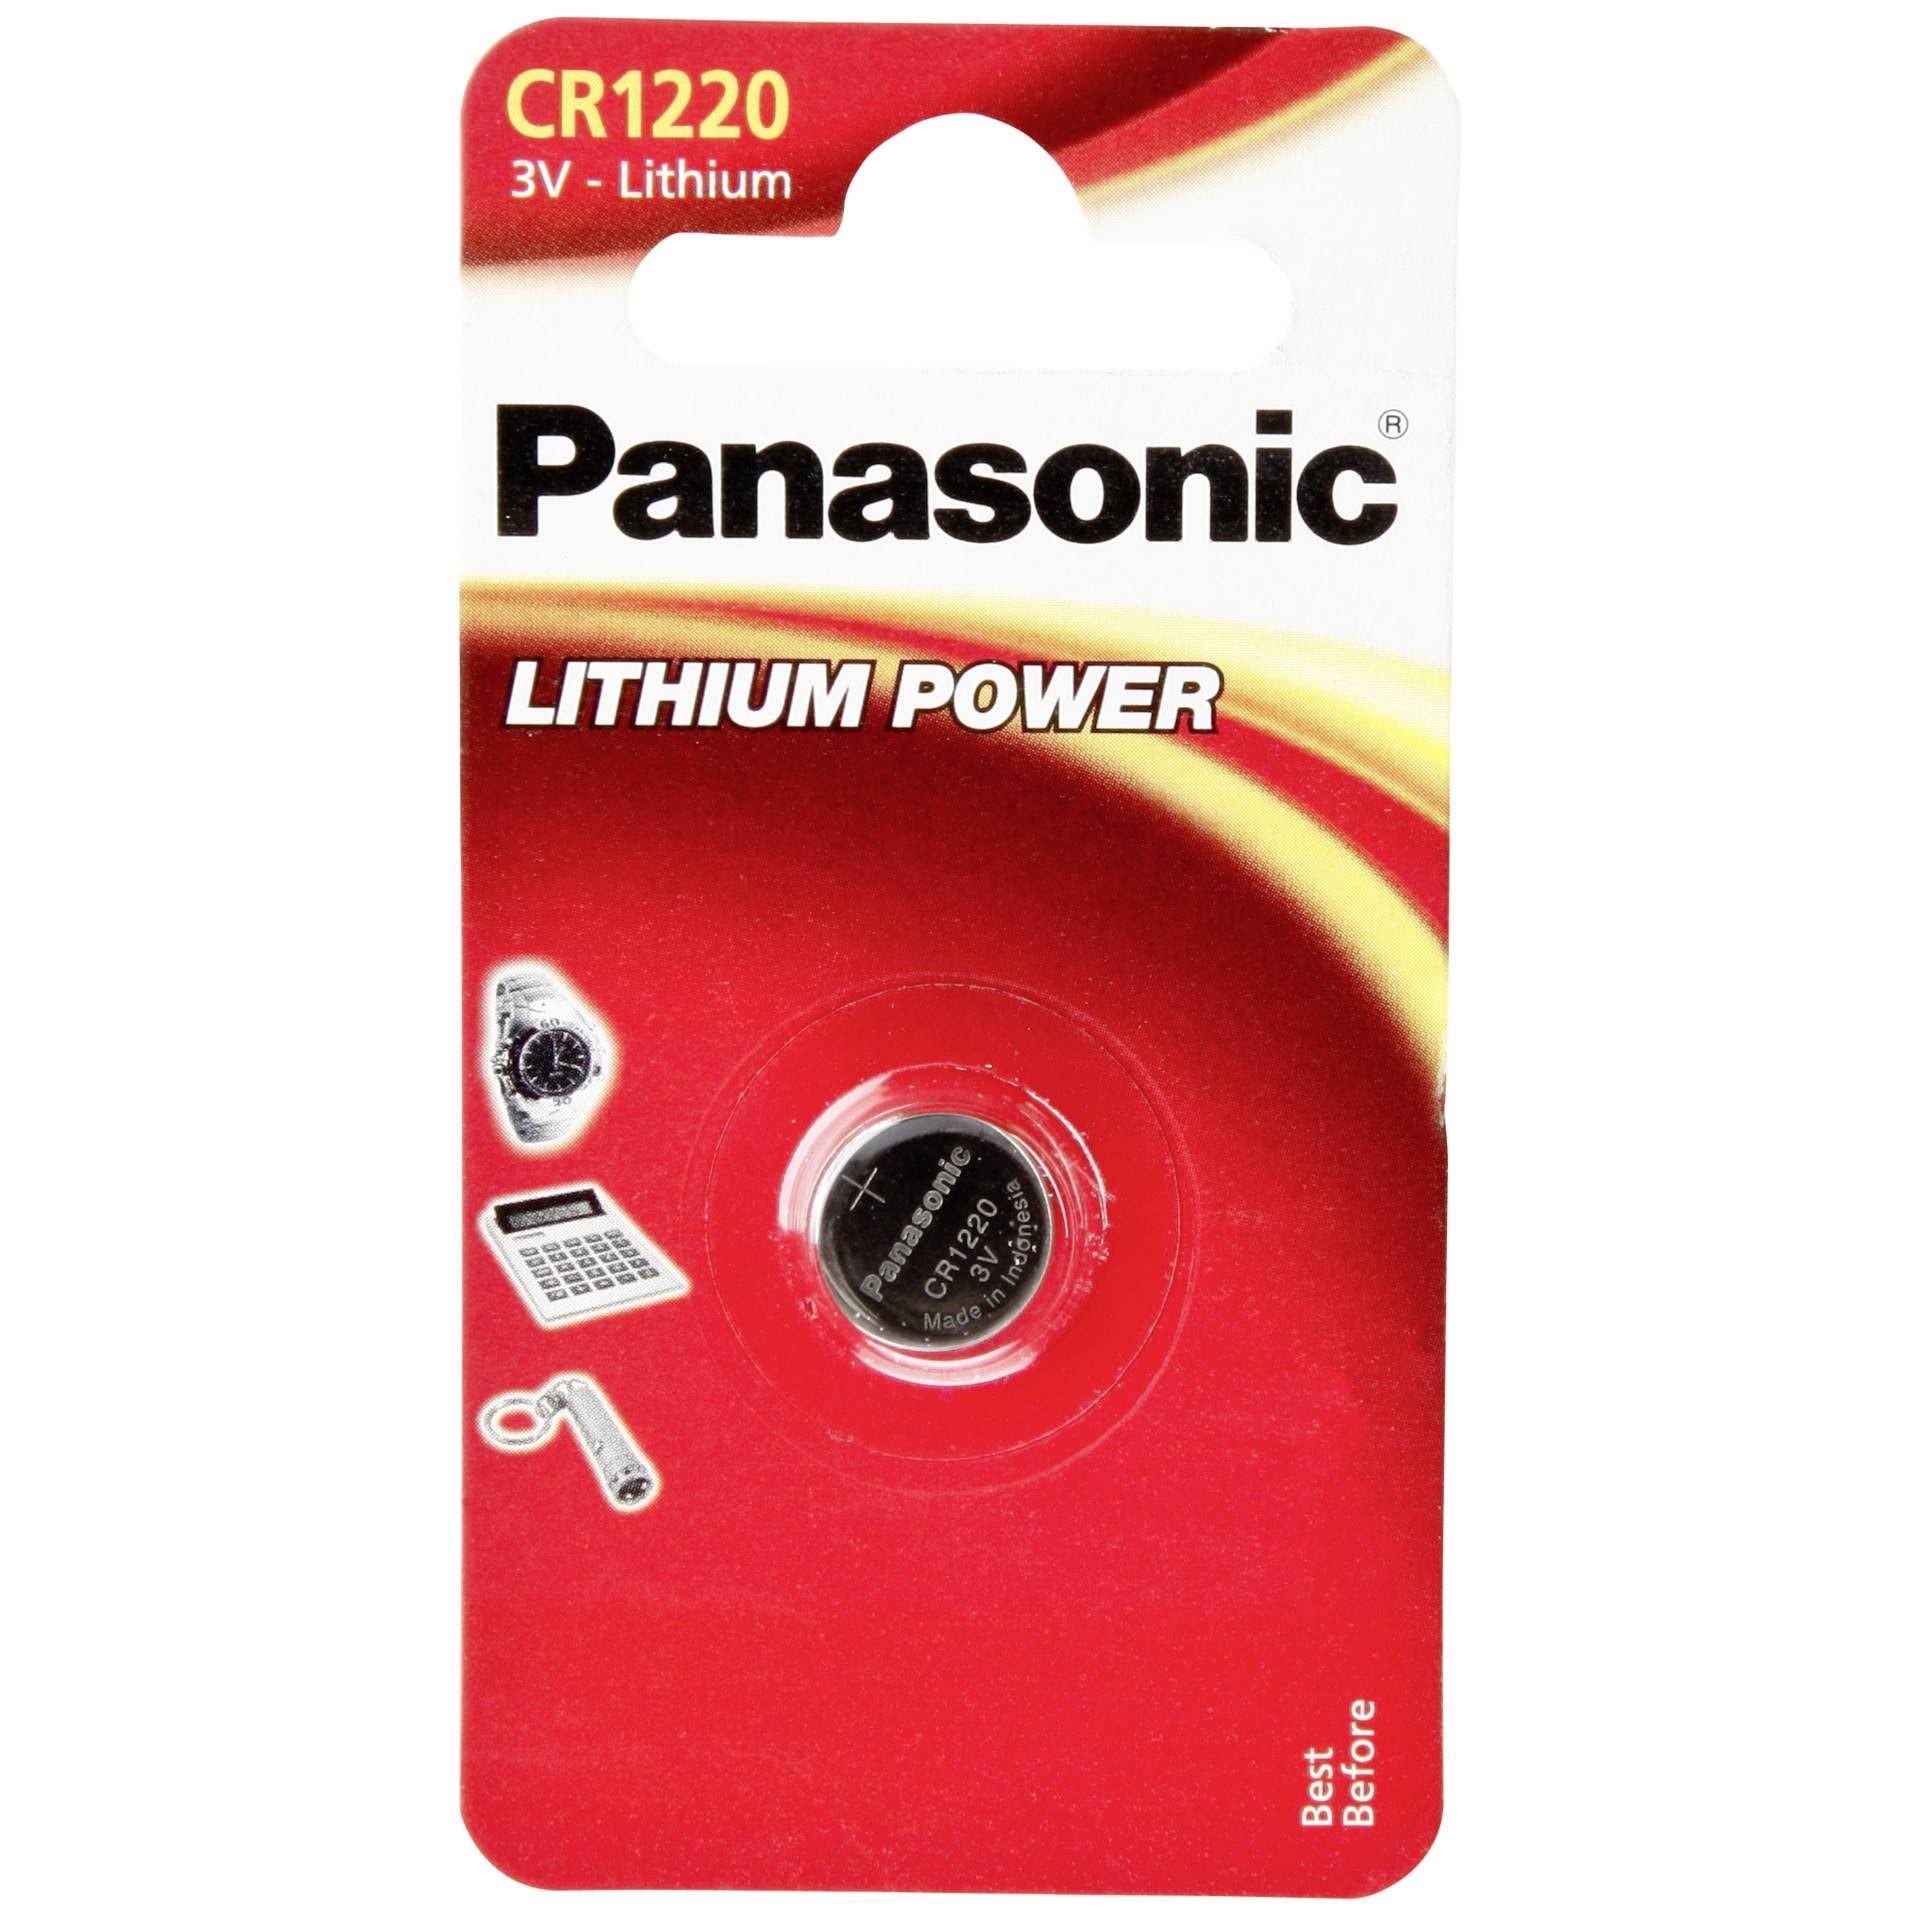 Panasonic 1 CR 1220 Lithium Power Batteries